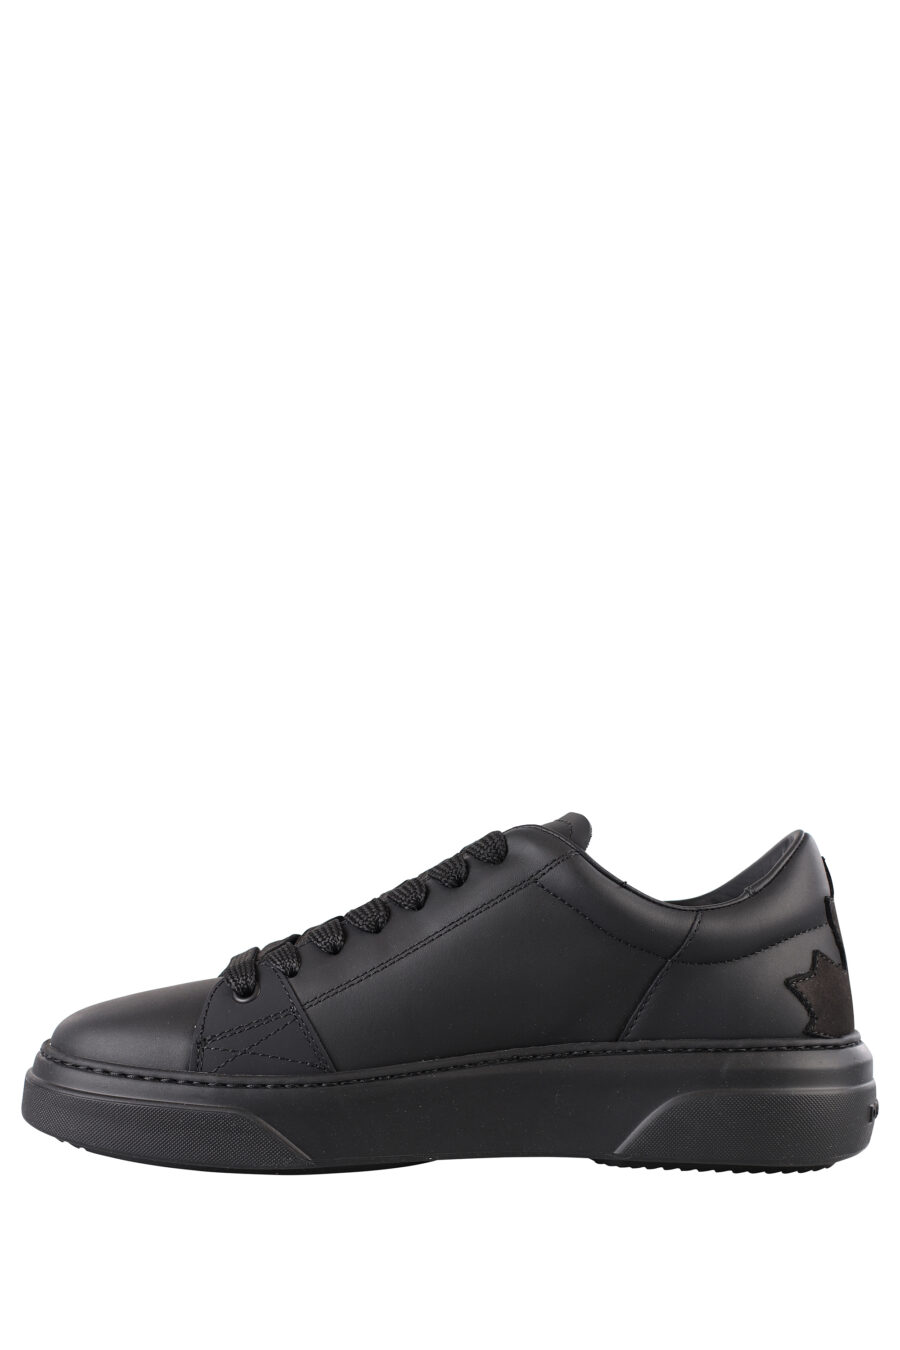 Zapatillas negras con logo blanco pequeño y suela negra - IMG 1151